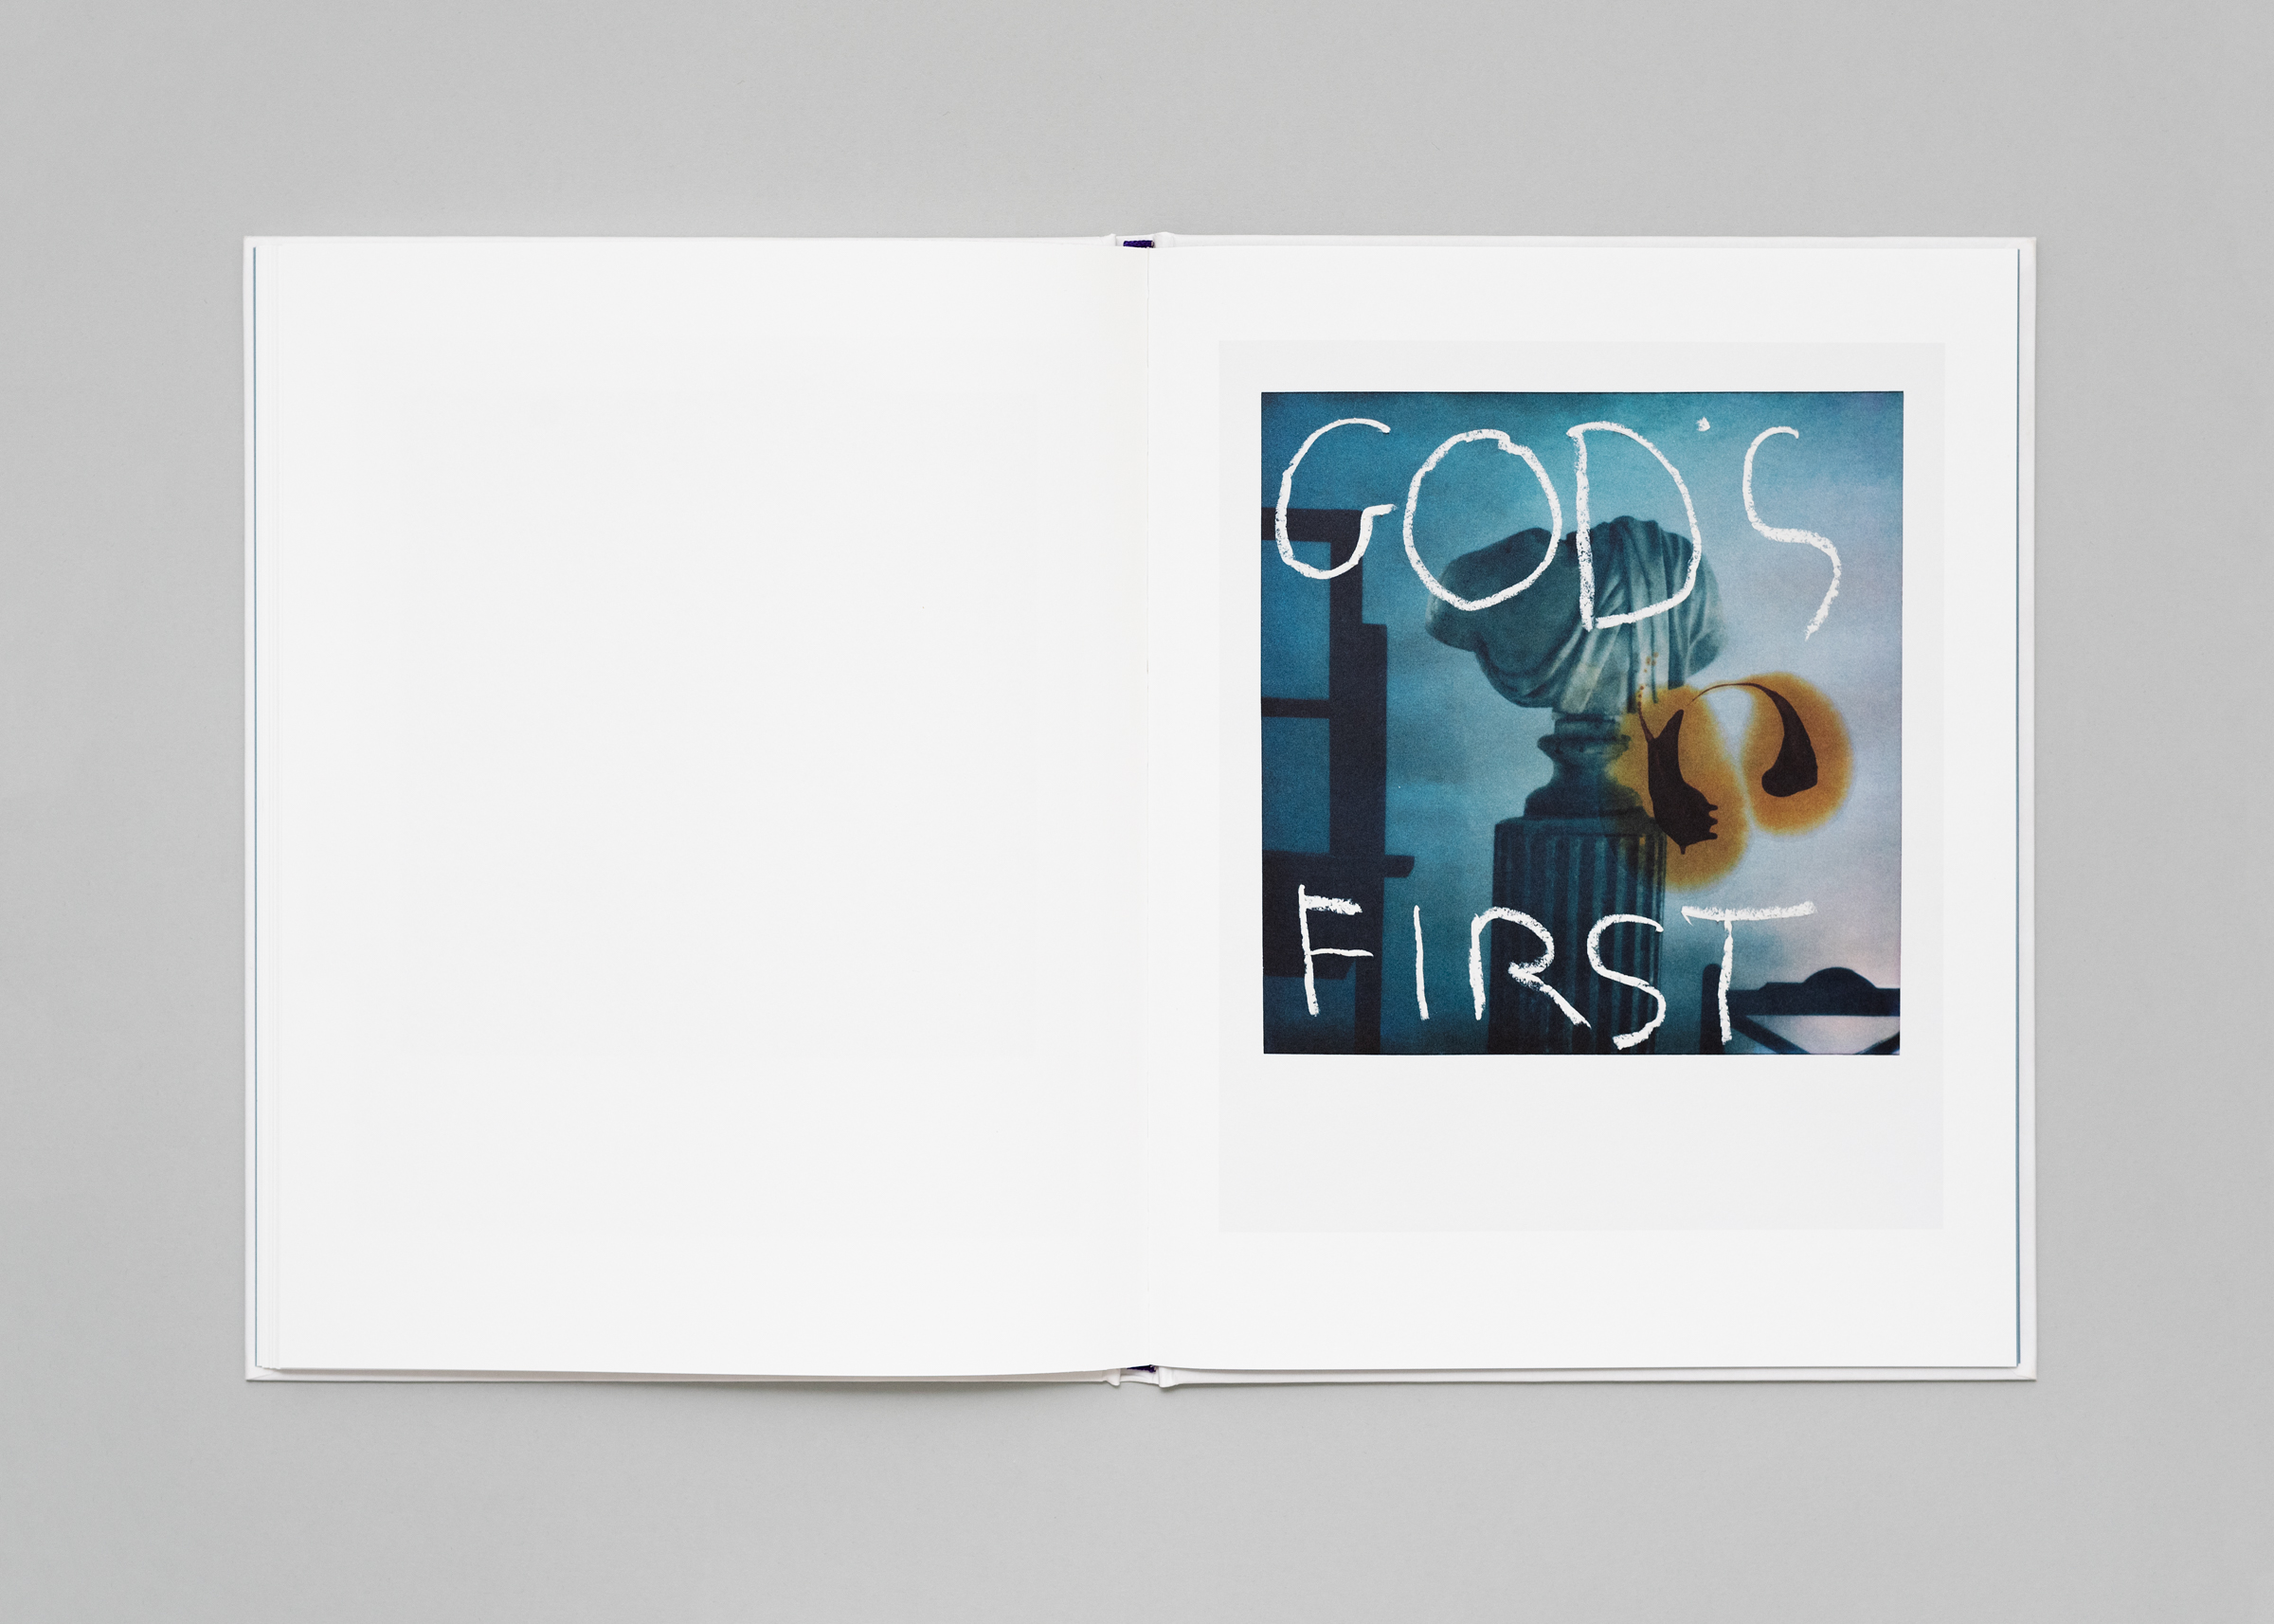 François Halard — Gods First — Book